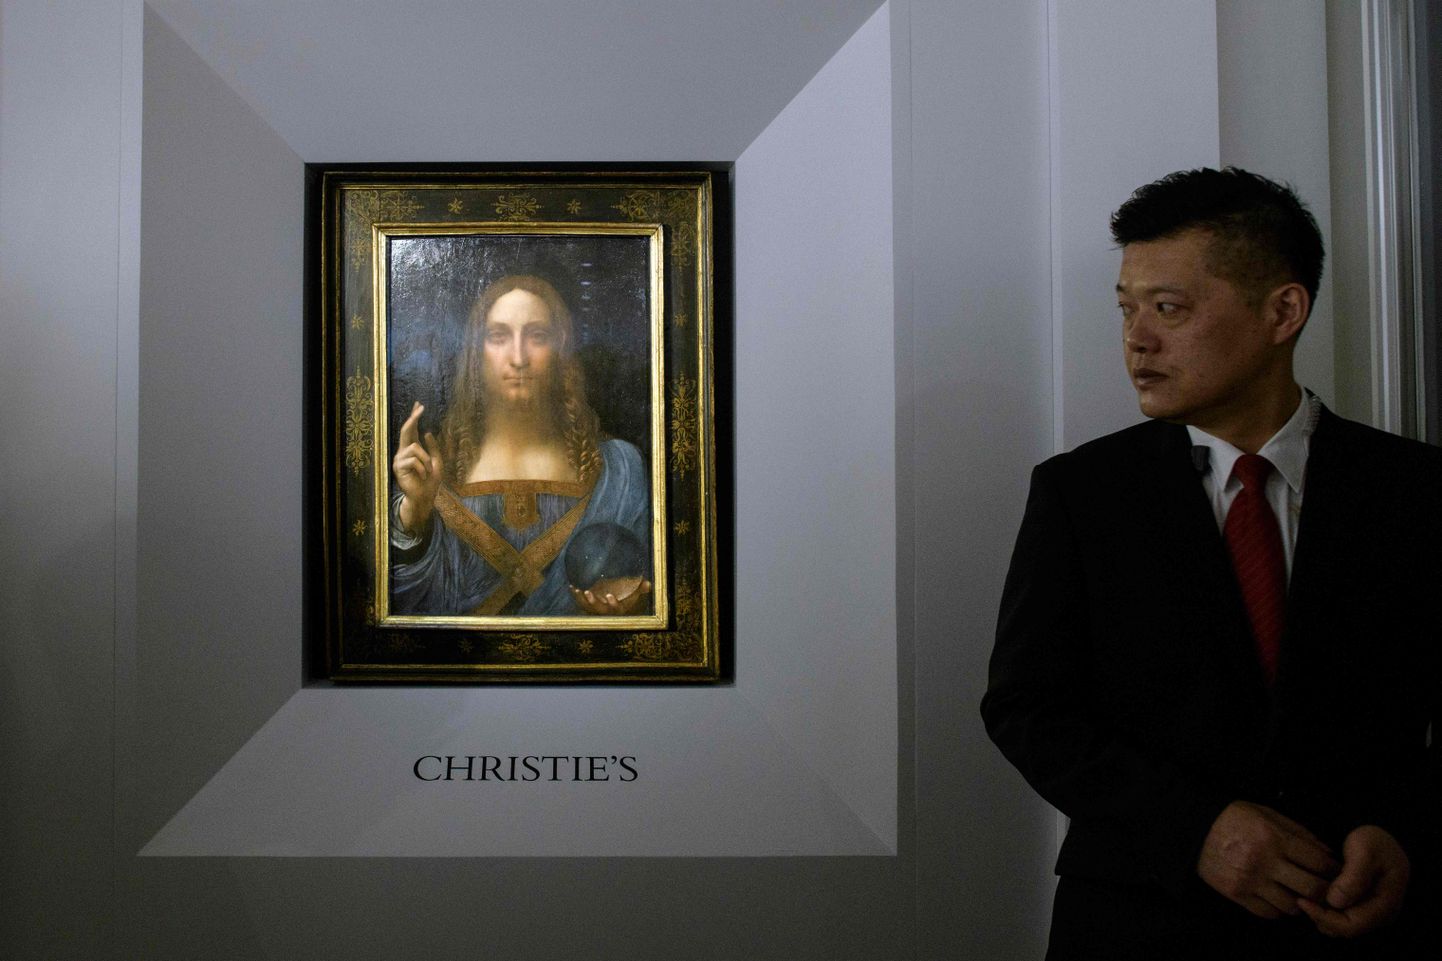 Maailma kõige kallim maal «Salvator Mundi», mille väärtus on 450 miljonit dollarit